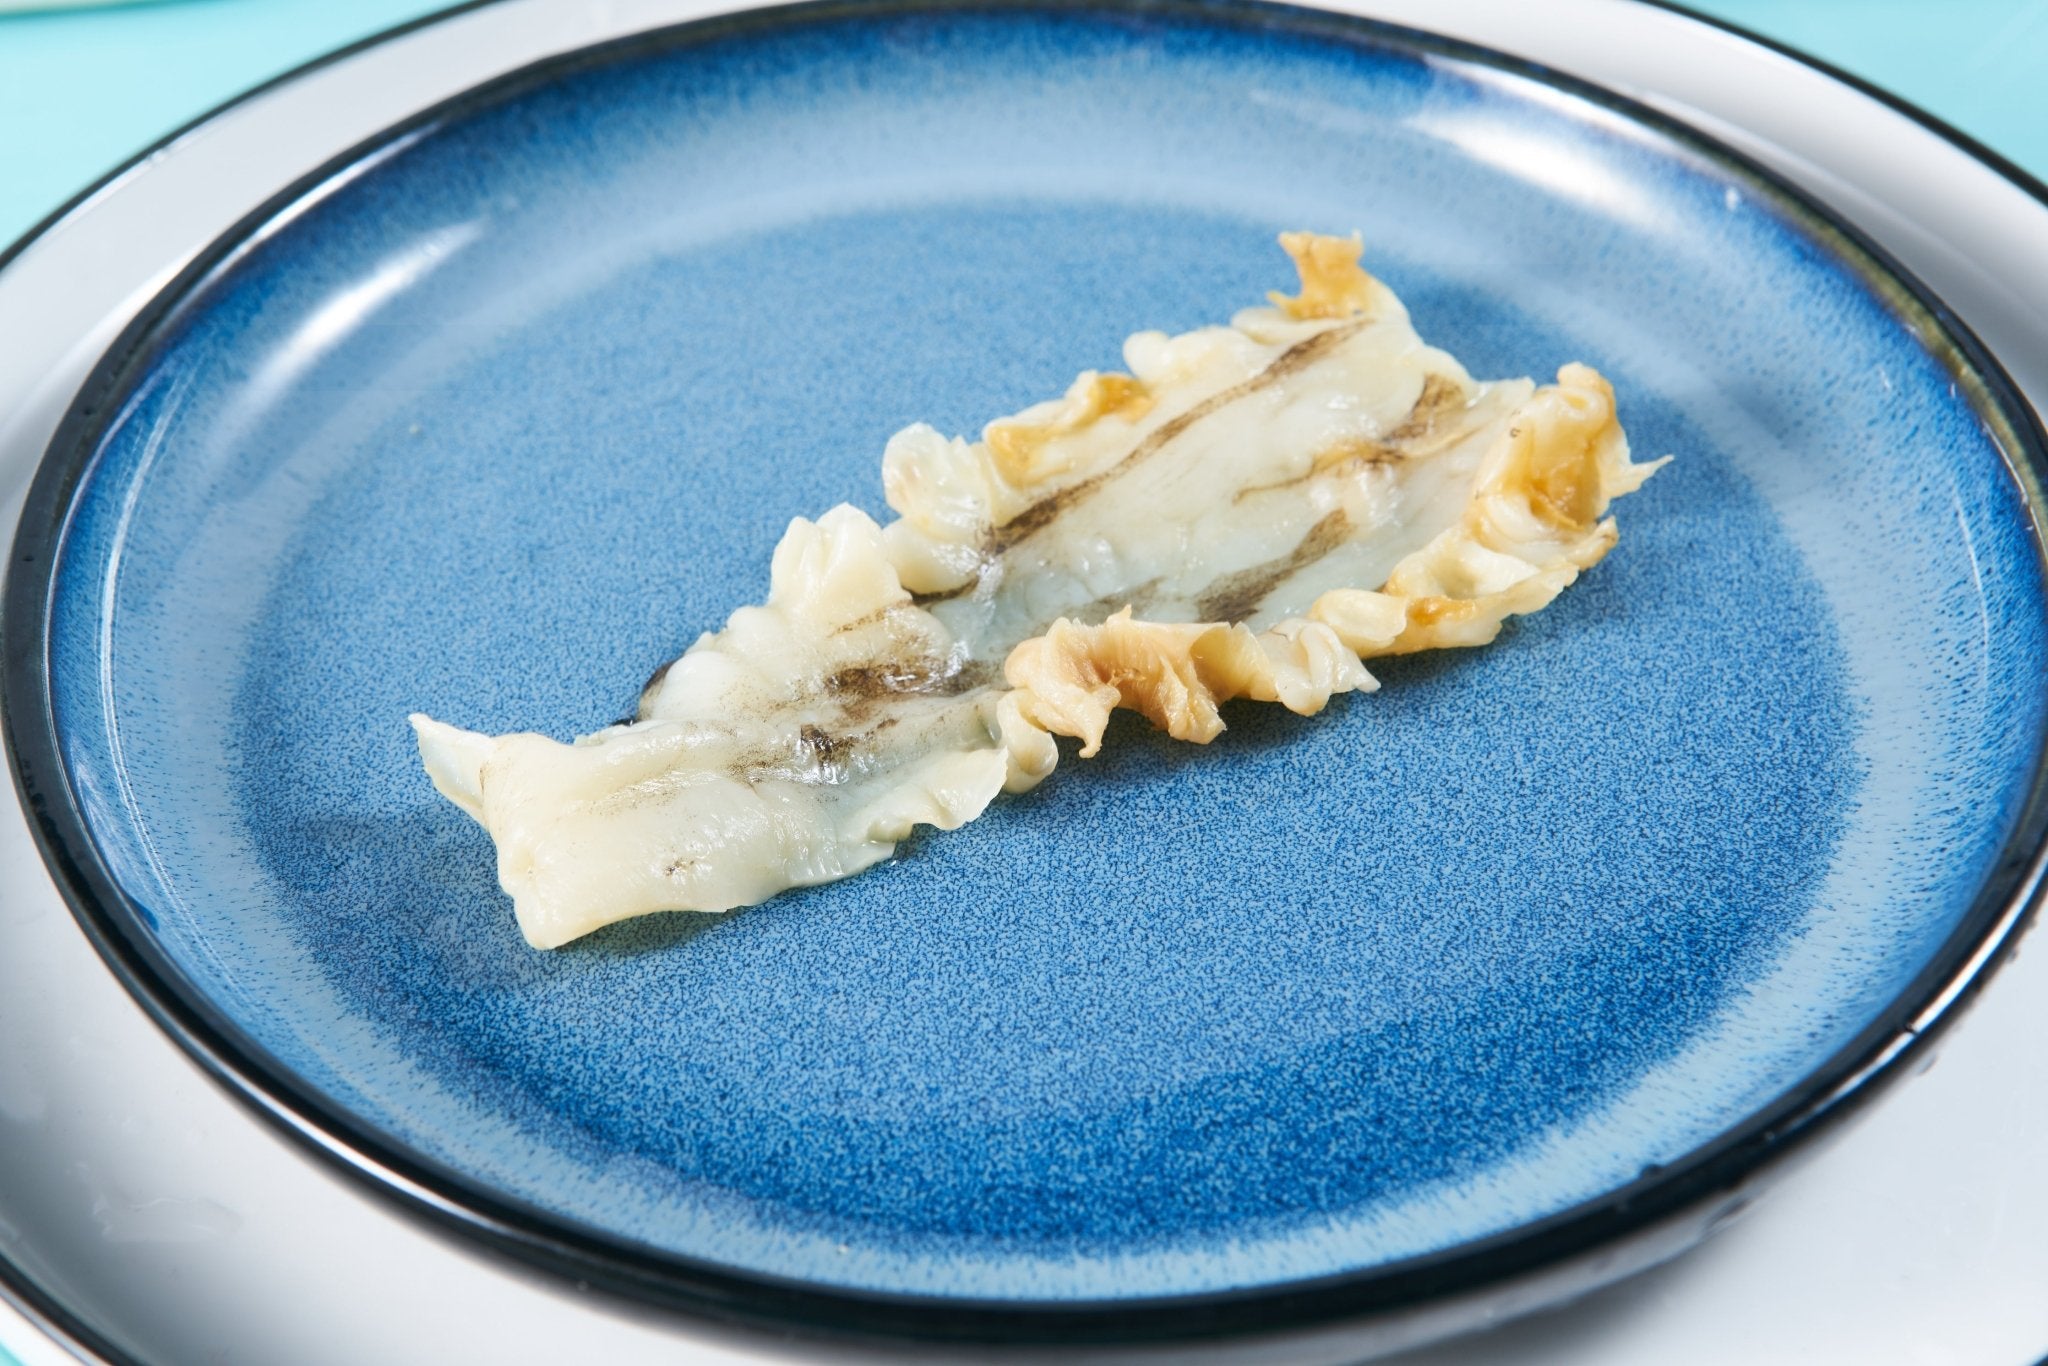 急凍鱈魚花膠 - On Hing Dry Seafood